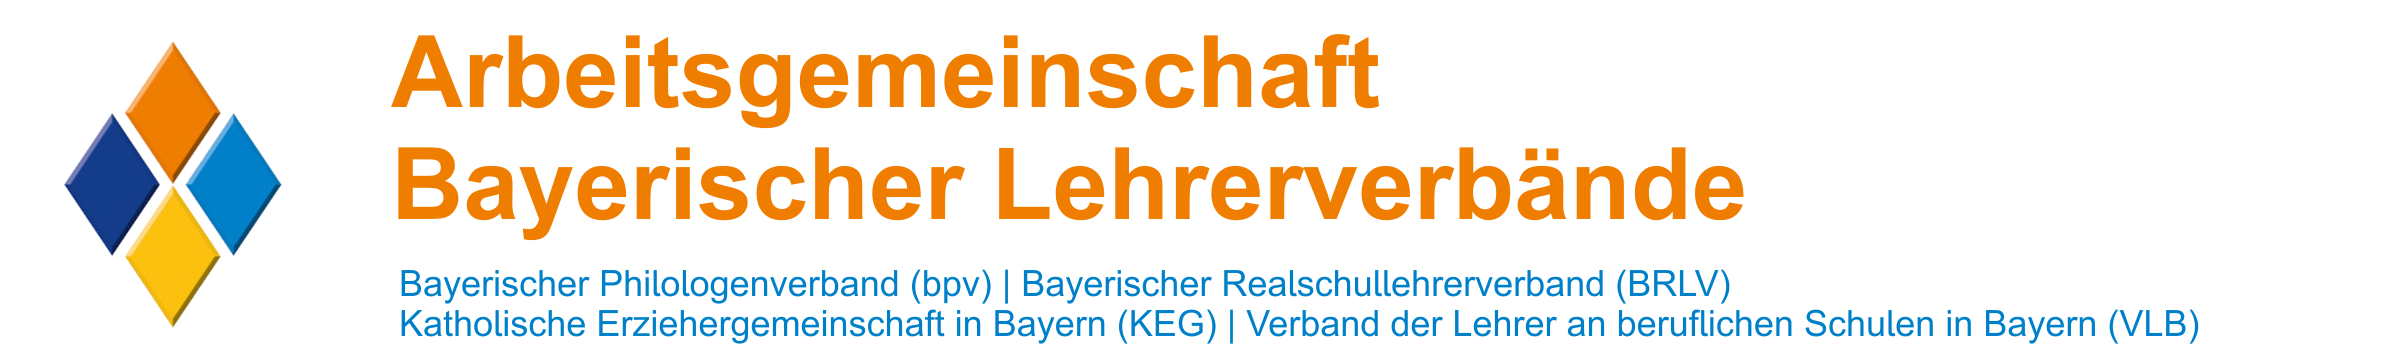 Arbeitsgemeinschaft Bayerischer Lehrerverbände